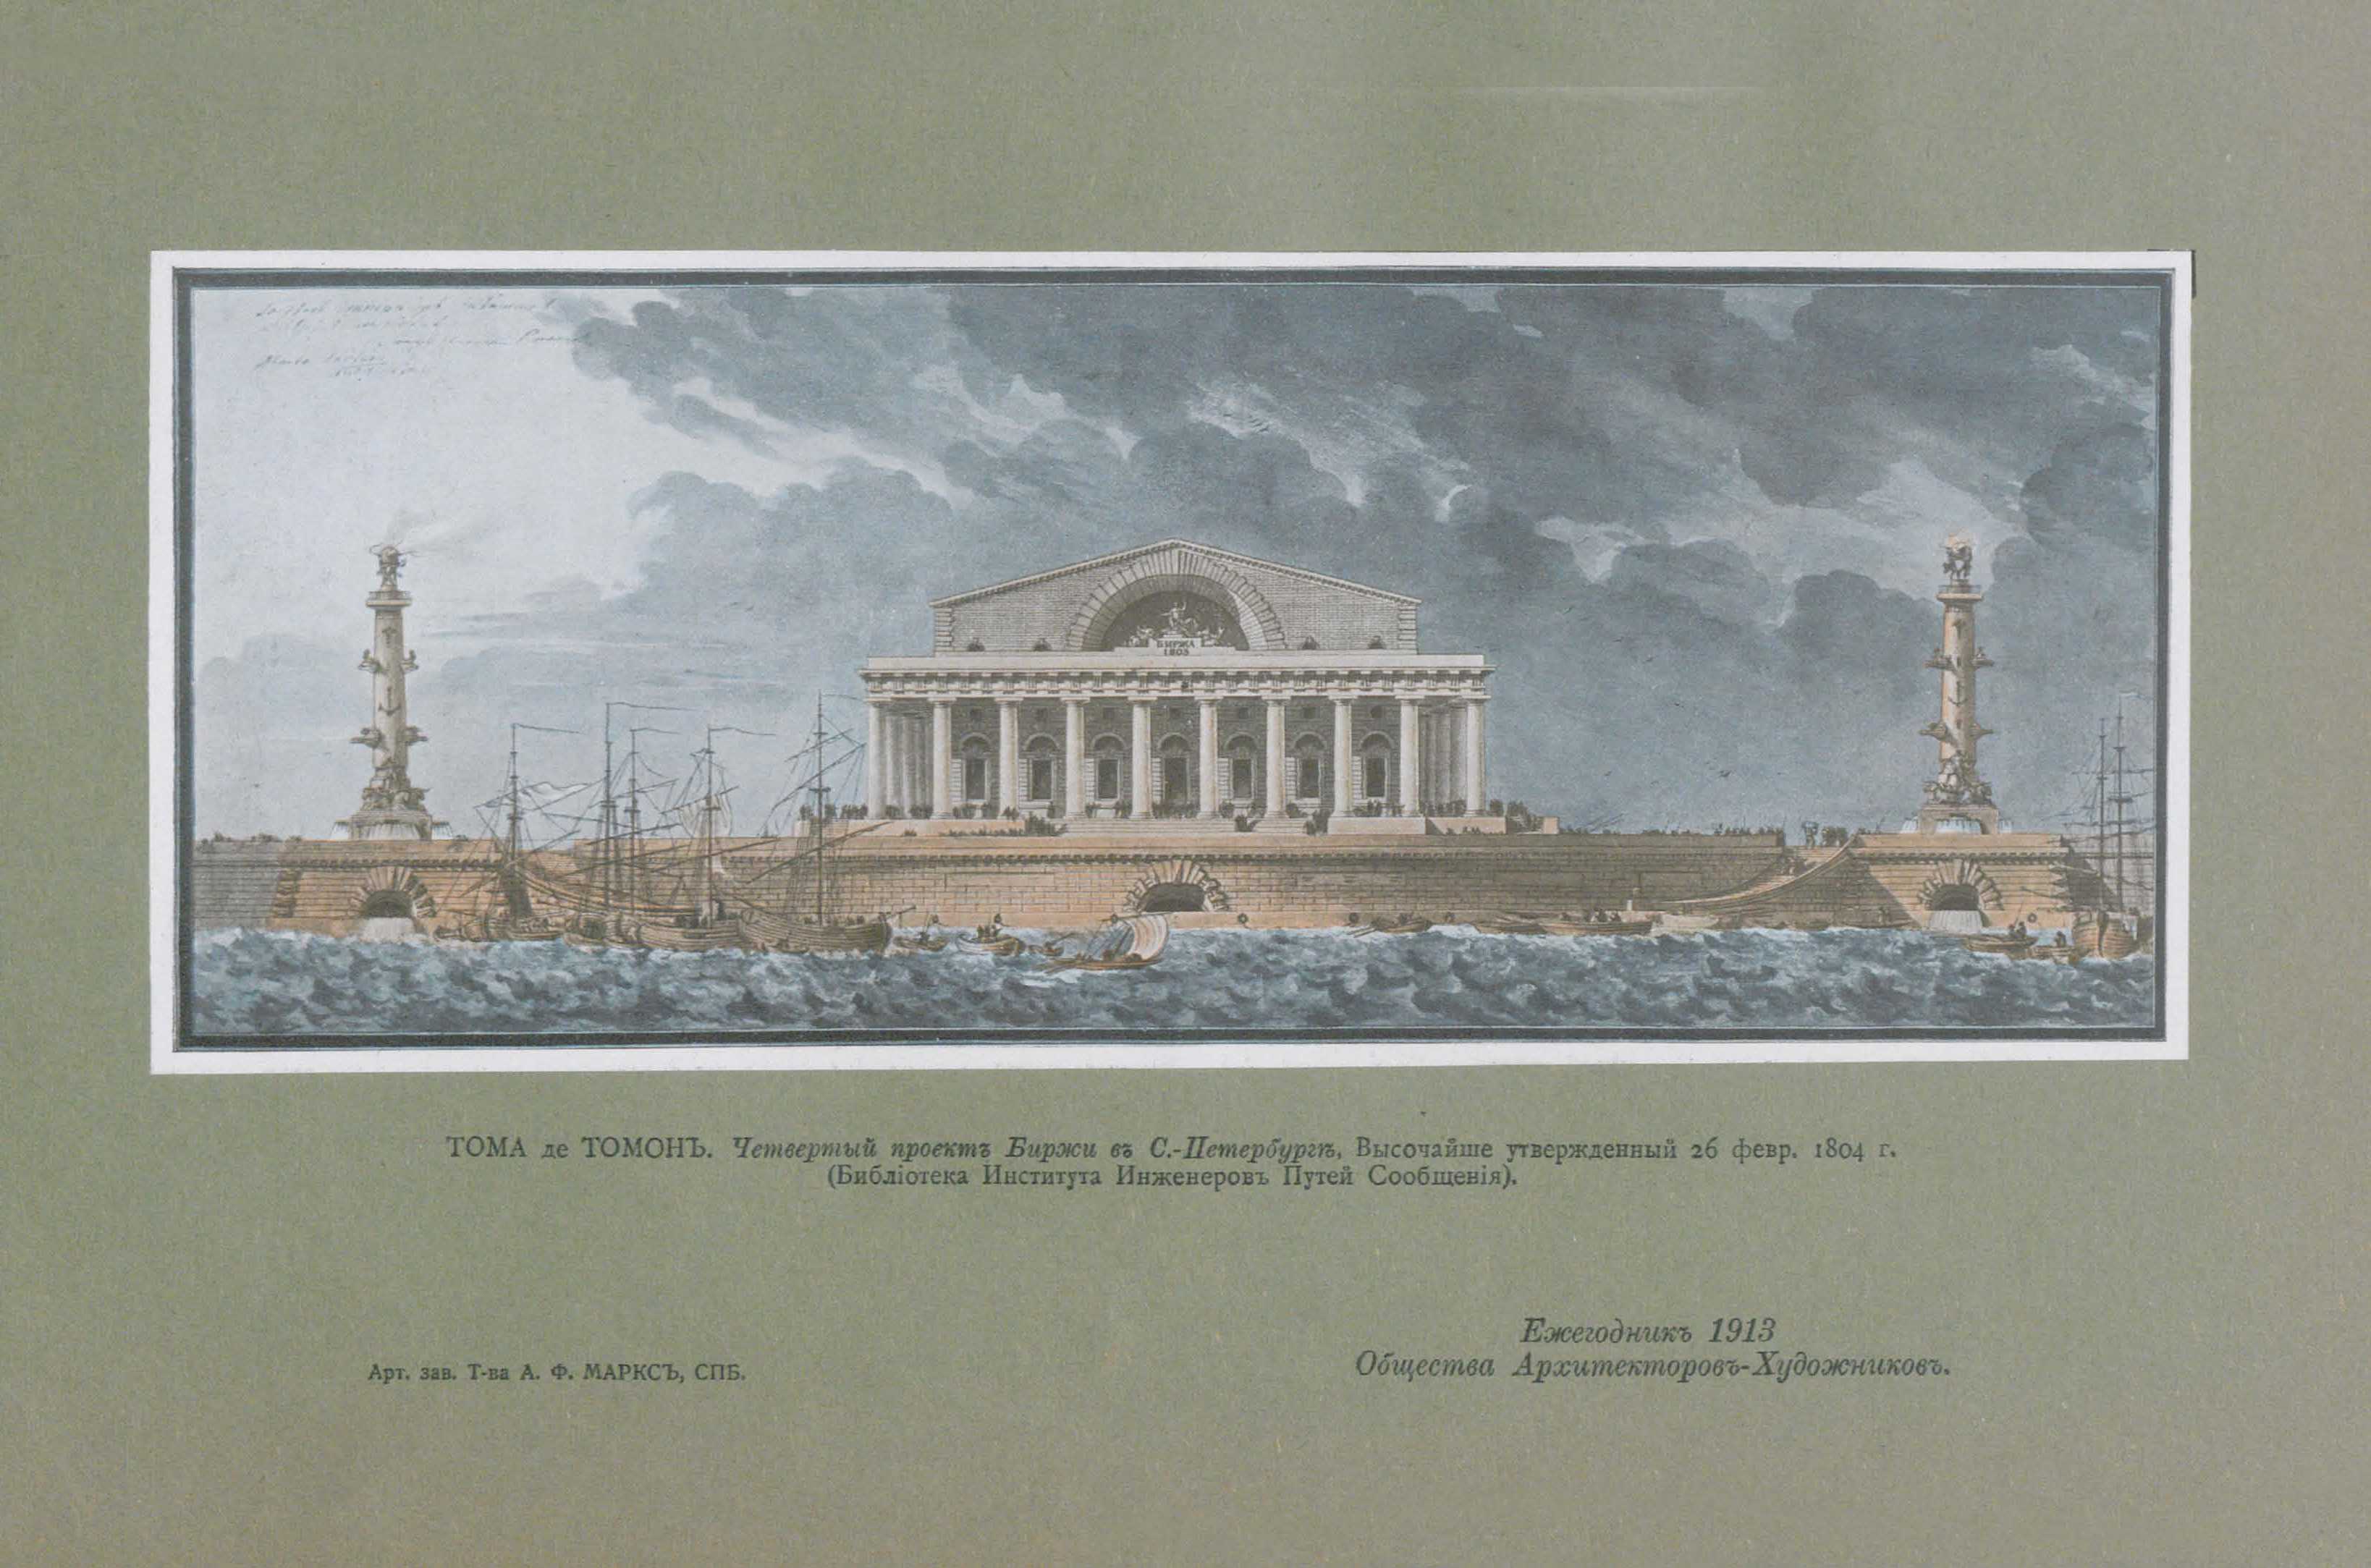 Тома де Томон. Четвертый проект Биржи в С.-Петербурге, Высочайше утвержденный 26 февраля 1804 года